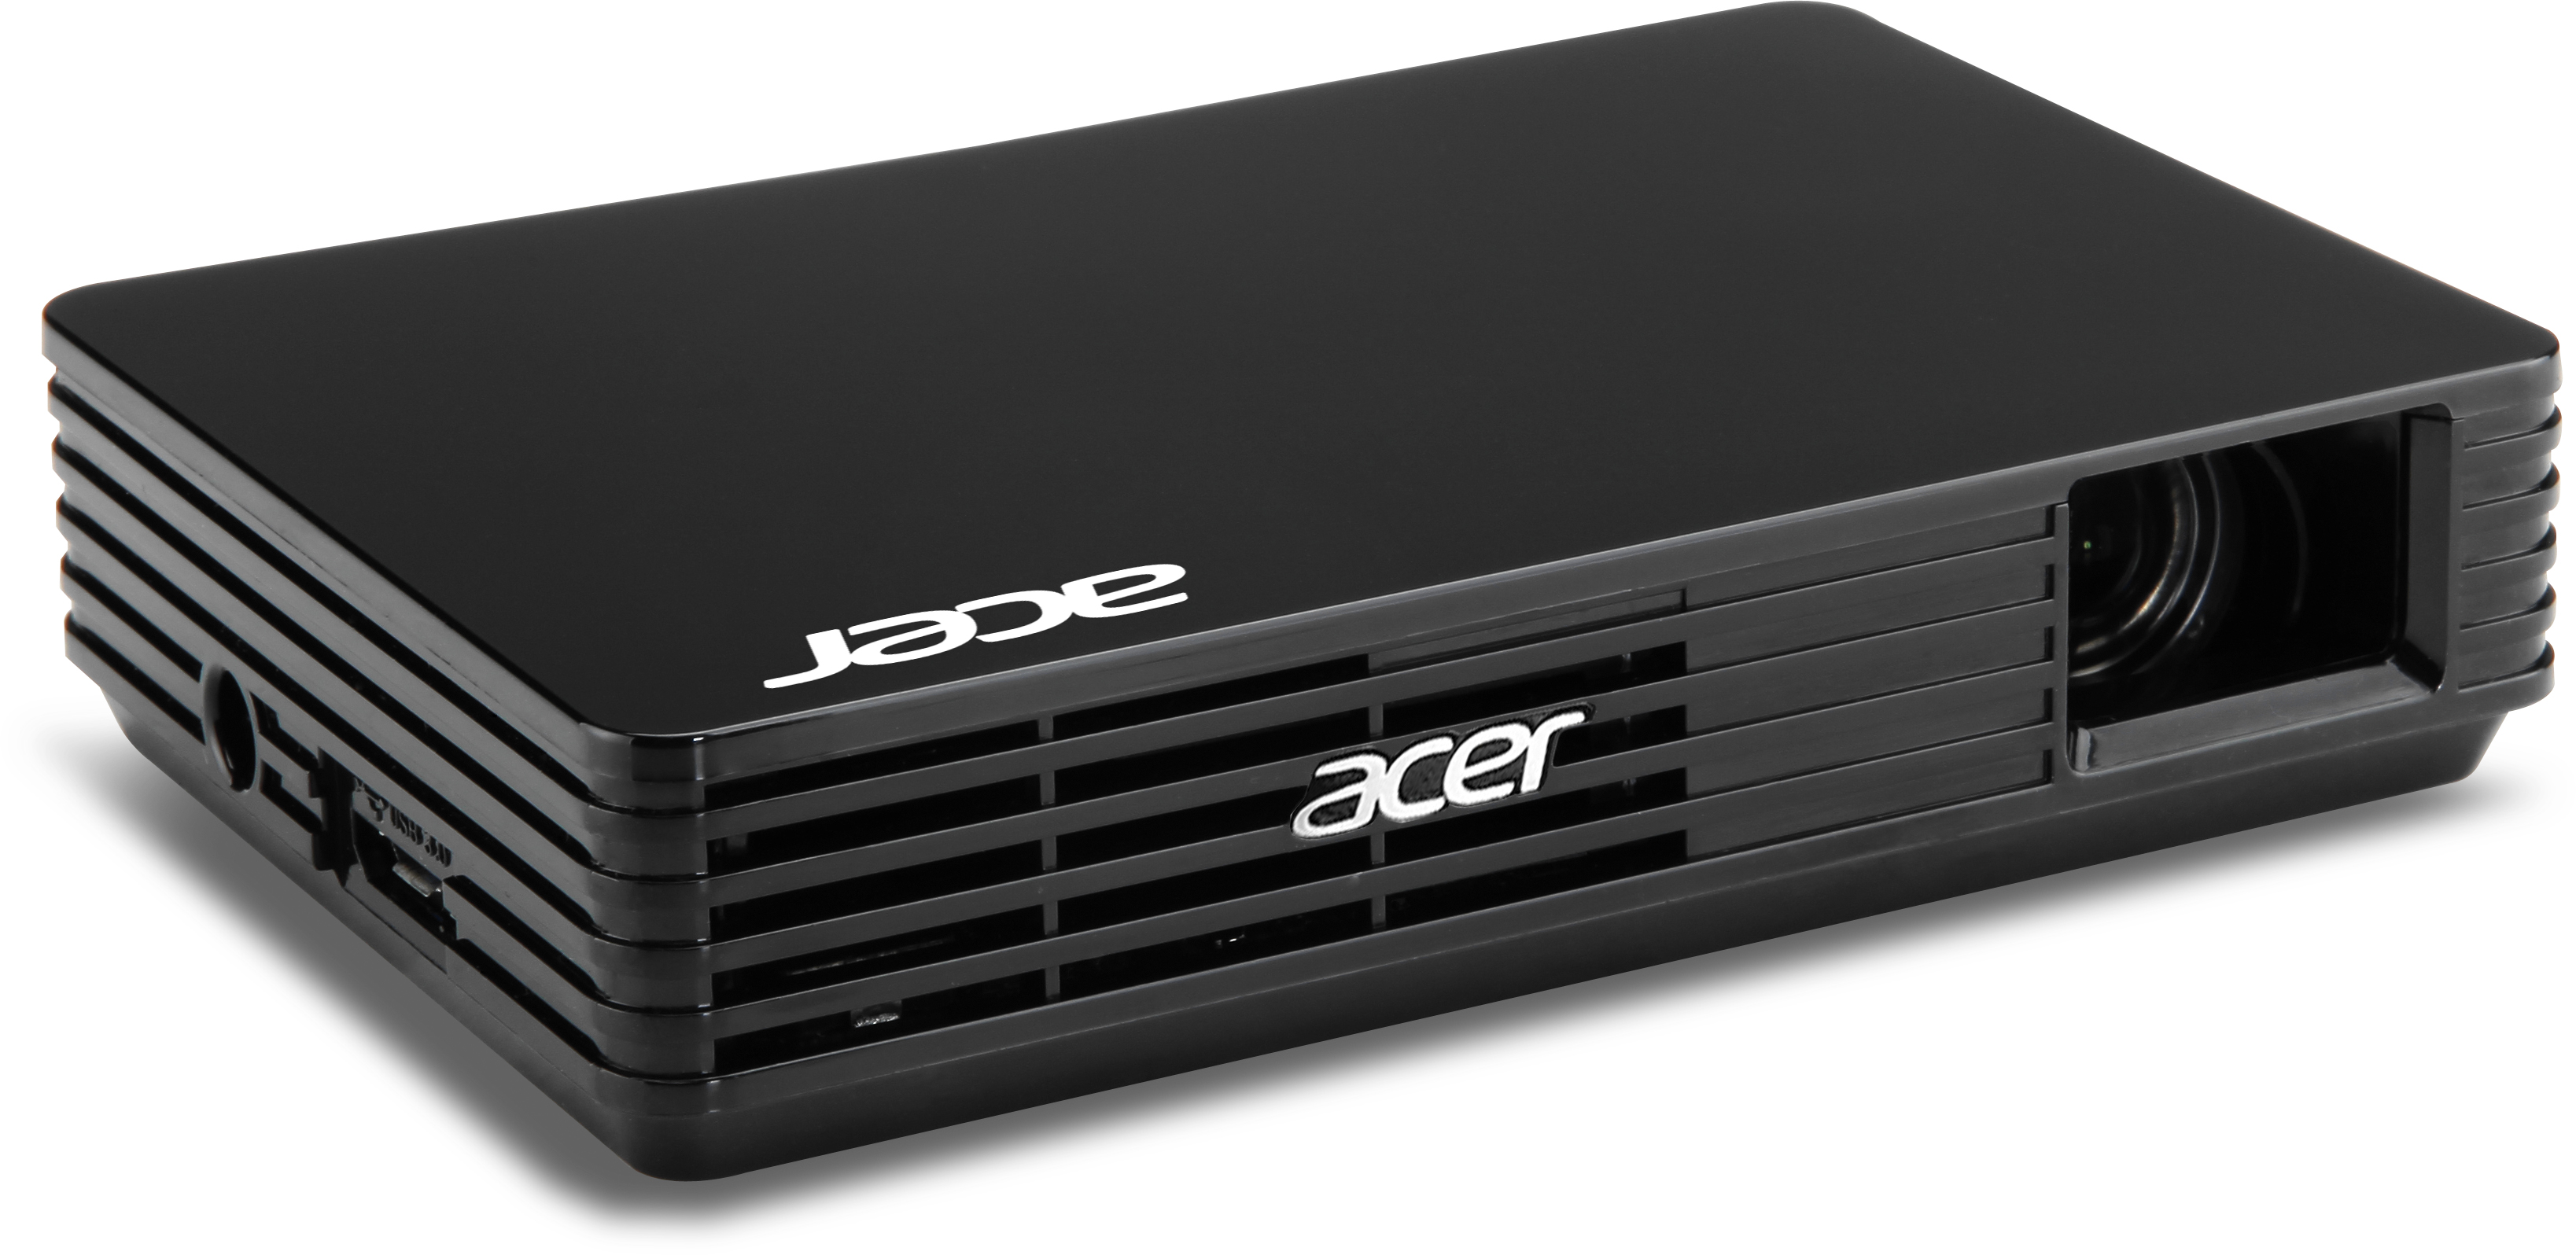 Acer Pico review |